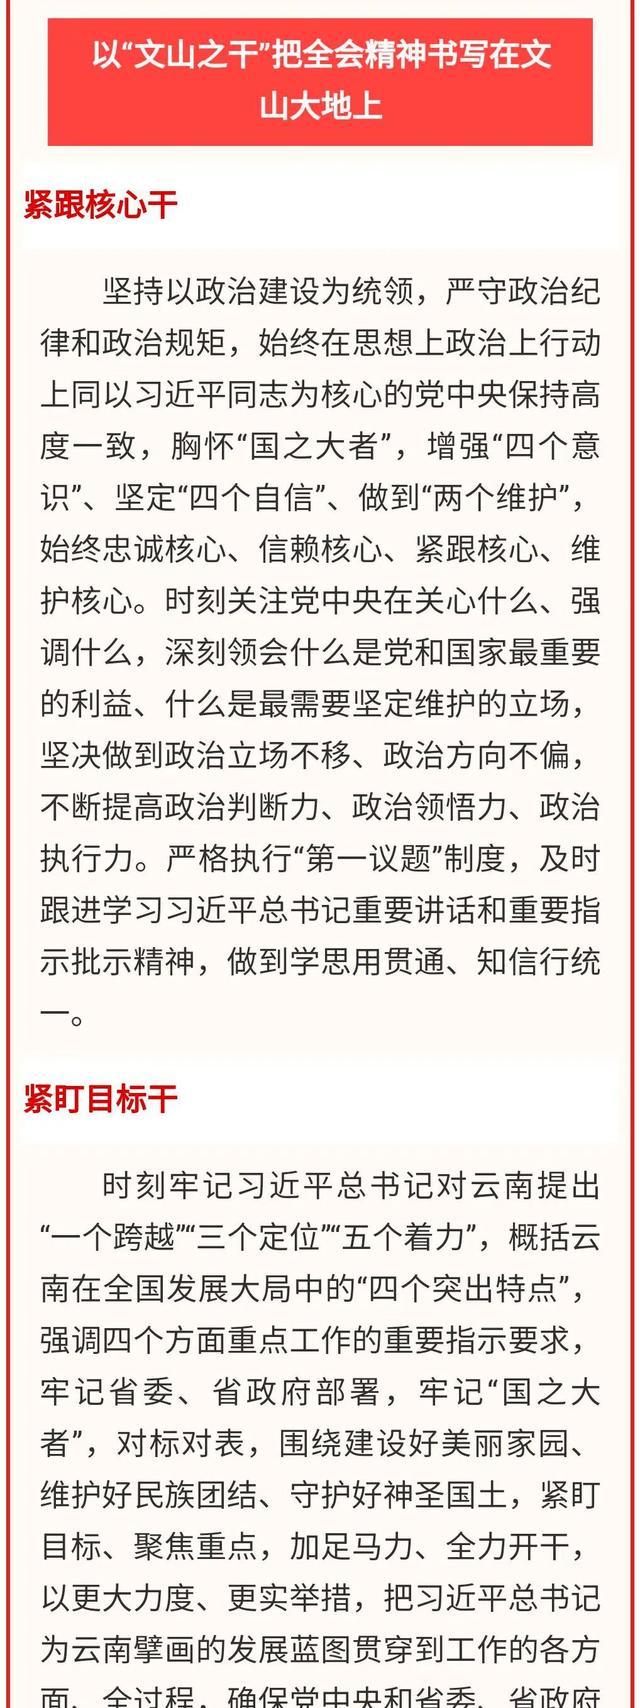 《社会主义论坛》杂志发表陈明署名文章，谈“文山之干”的贯彻落实